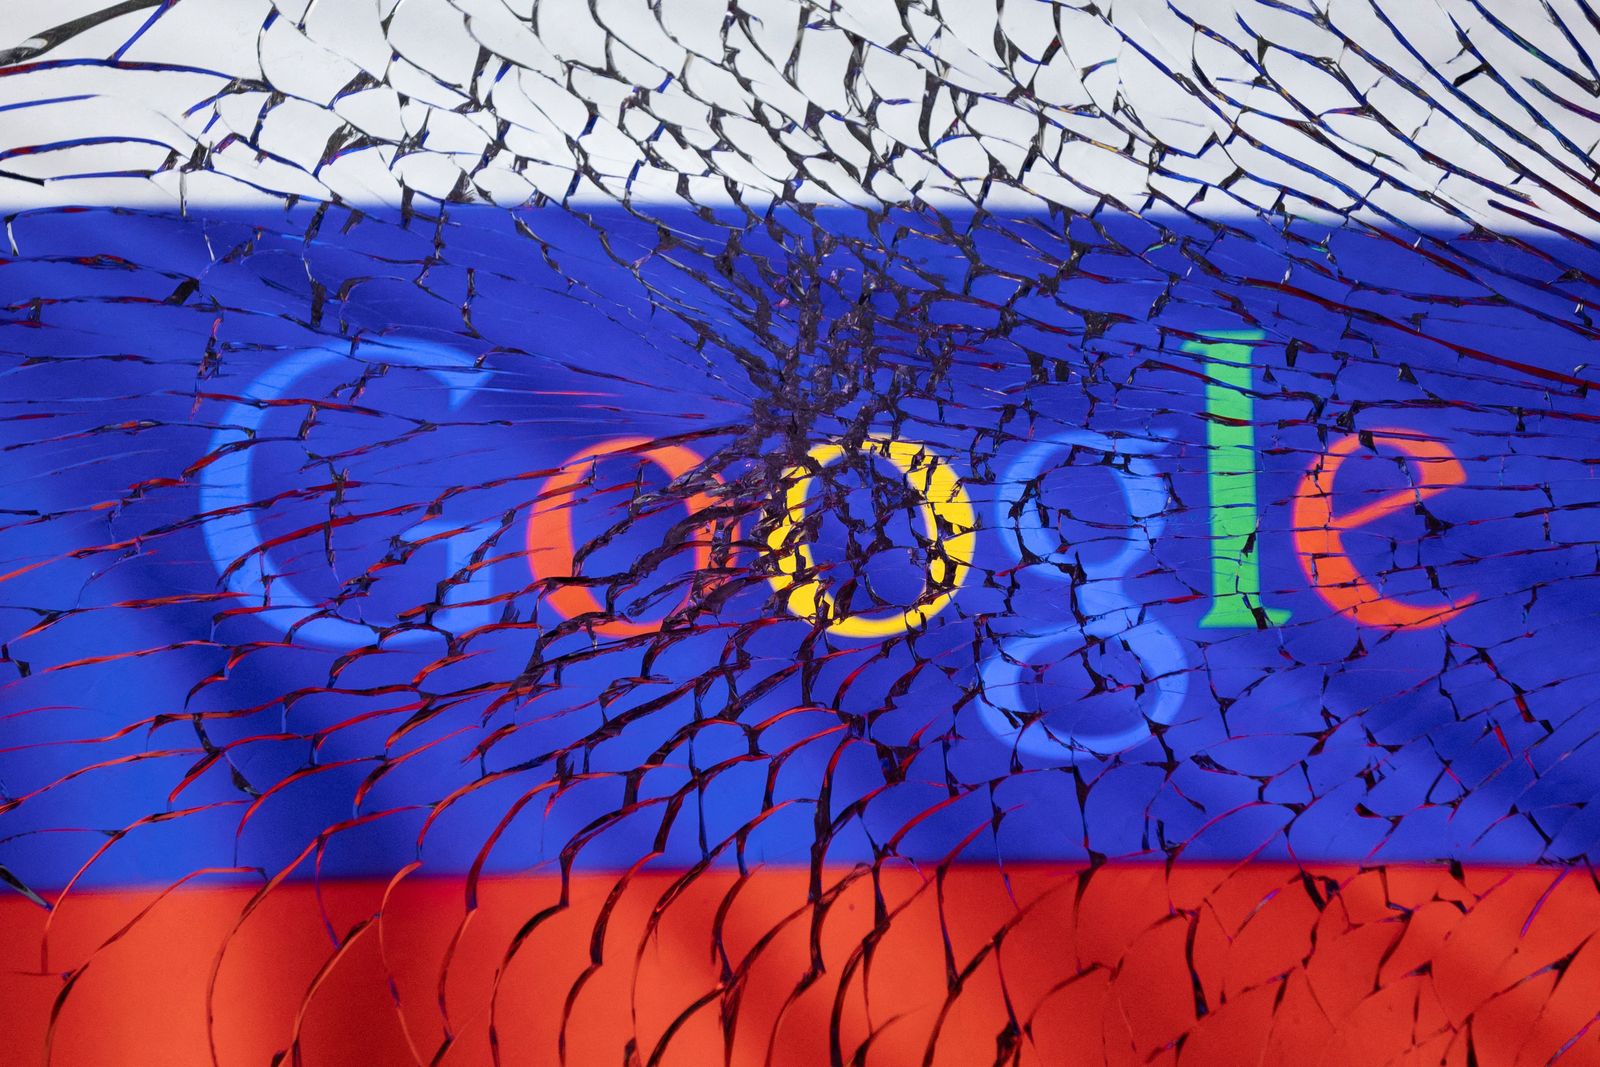 صورة توضيحية تظهر شعار جوجل والعلم الروسي على زجاج مهشم - 1 مارس 2022 - REUTERS